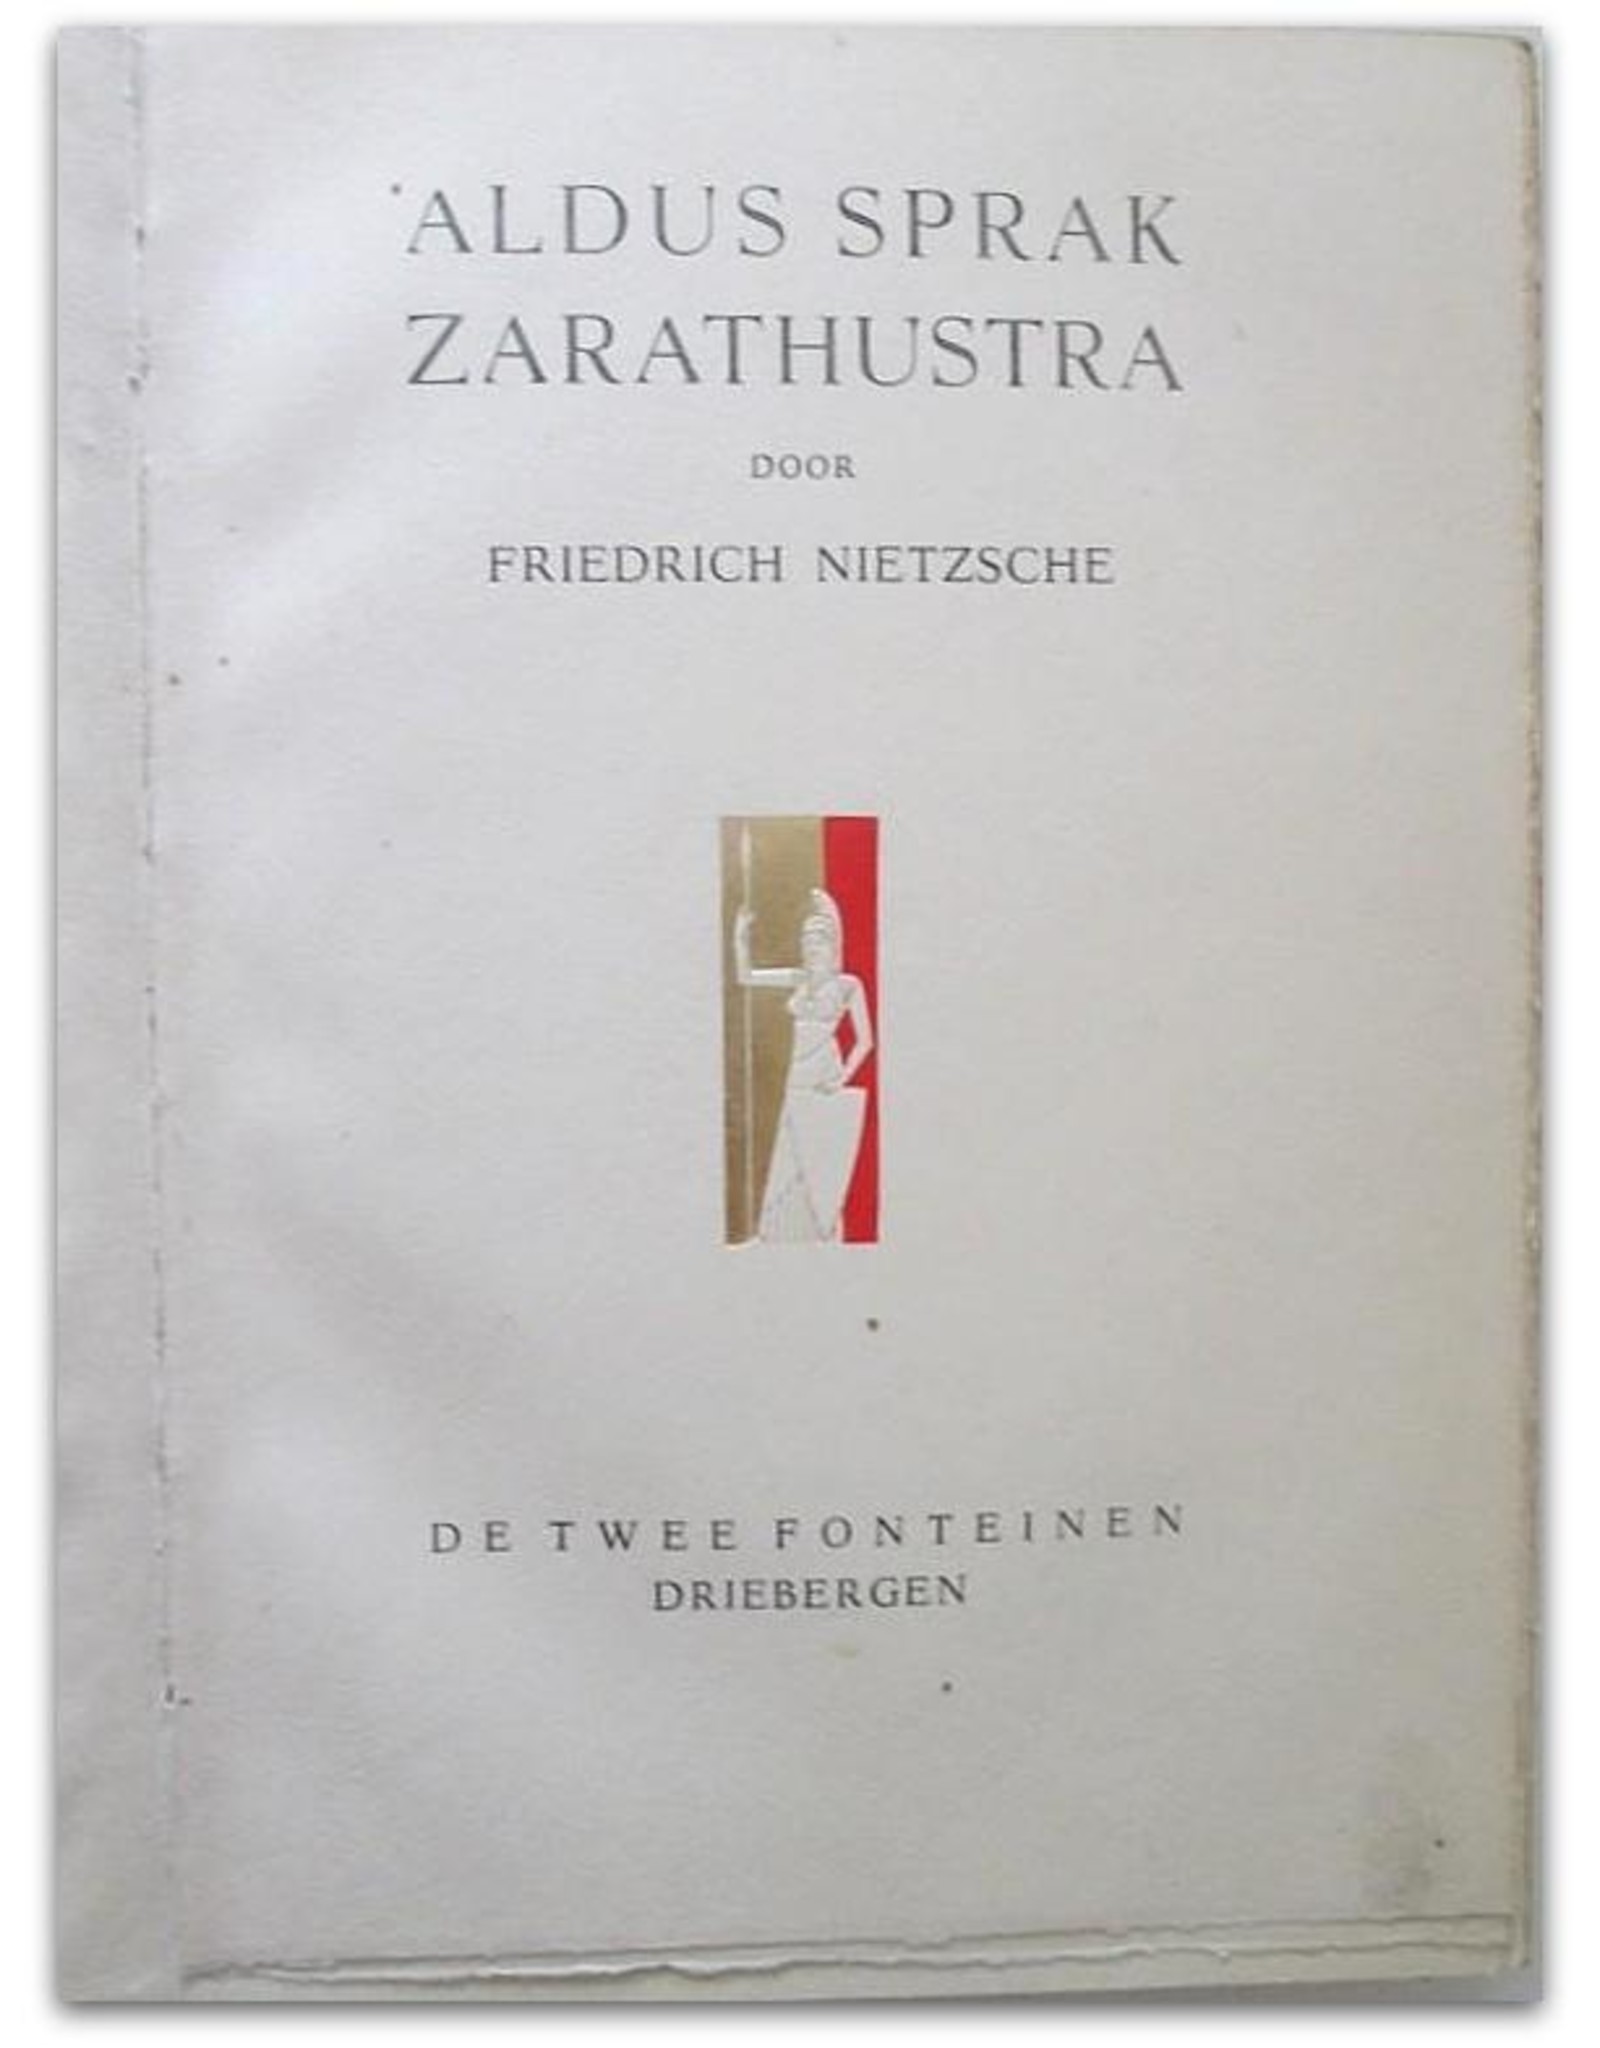 Friedrich Nietzsche - Aldus sprak Zarathustra